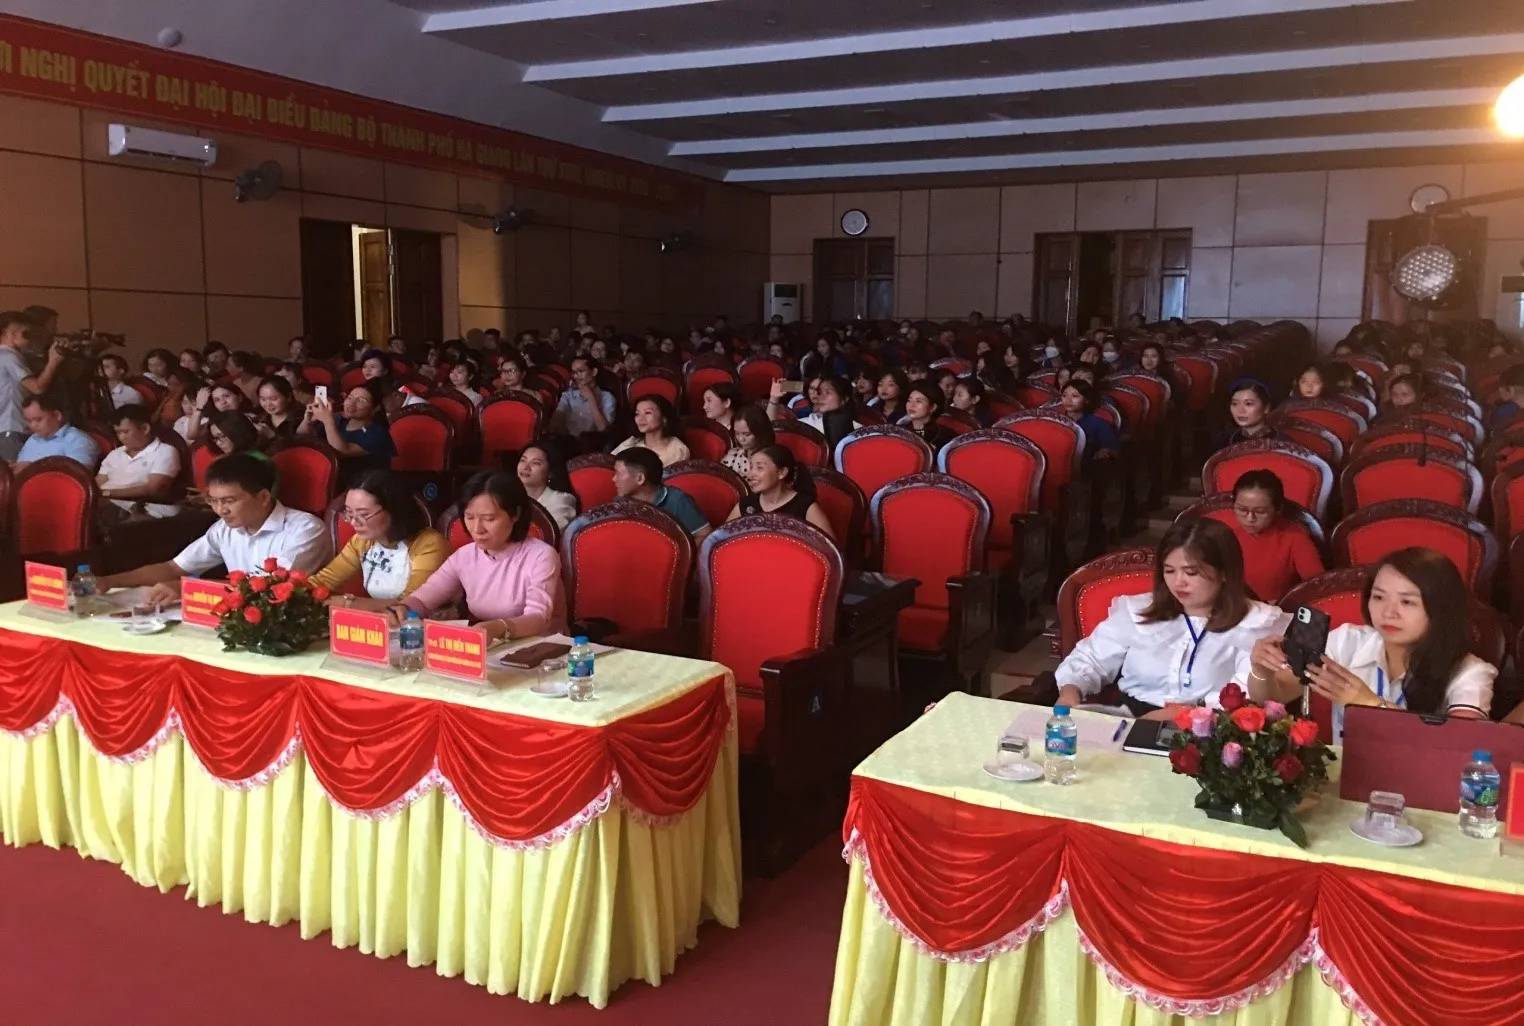 Tổ chức hội nghị tại Hưng Yên uy tín chuyên nghiệp